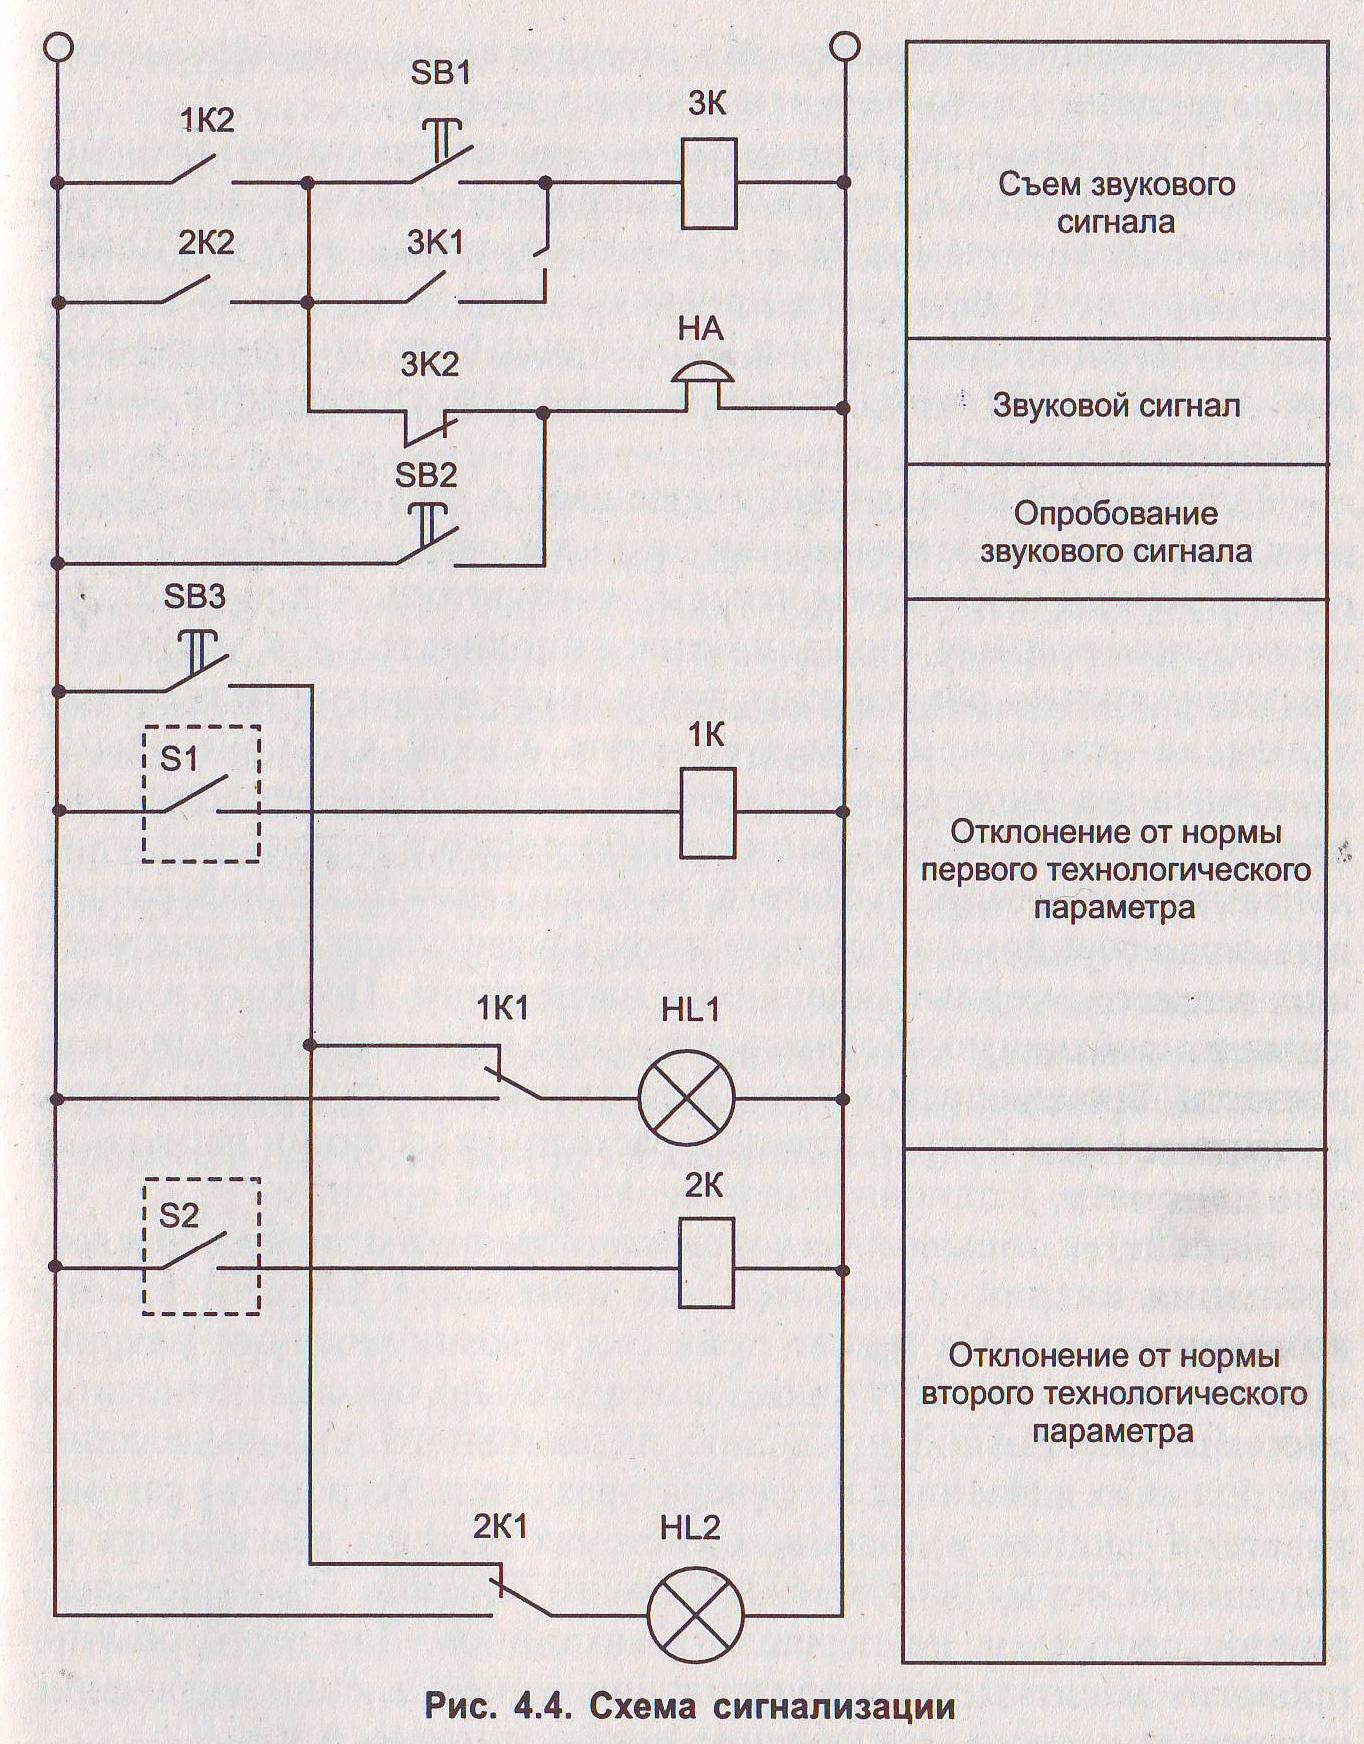 Сигнализация релейной защиты. Принципиальная электрическая схема технологической сигнализации. Схема сигнализации на 2 параметра. Принципиальная схема сигнализации автомобиля. Схема квитирования звукового сигнала.